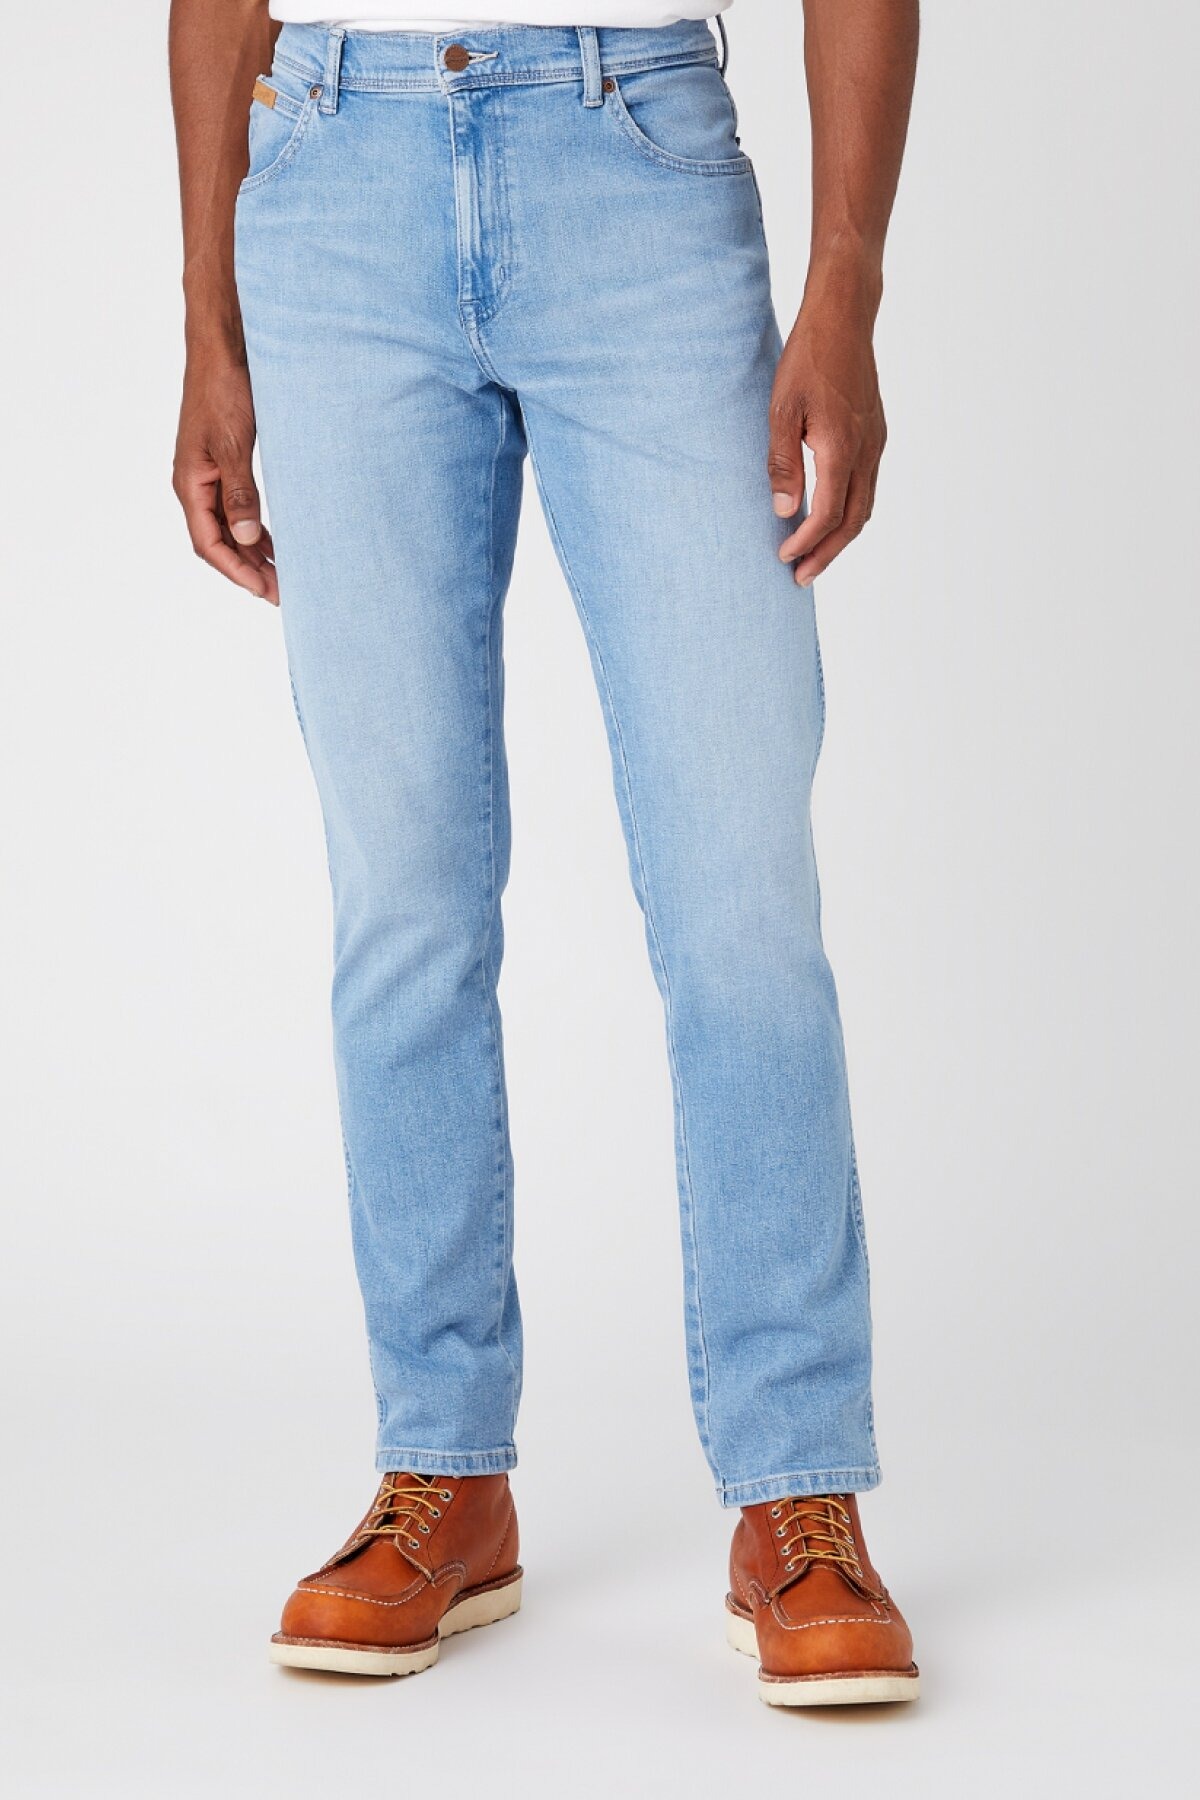 Джинсы мужские Wrangler Texas Slim Jeans голубые 56